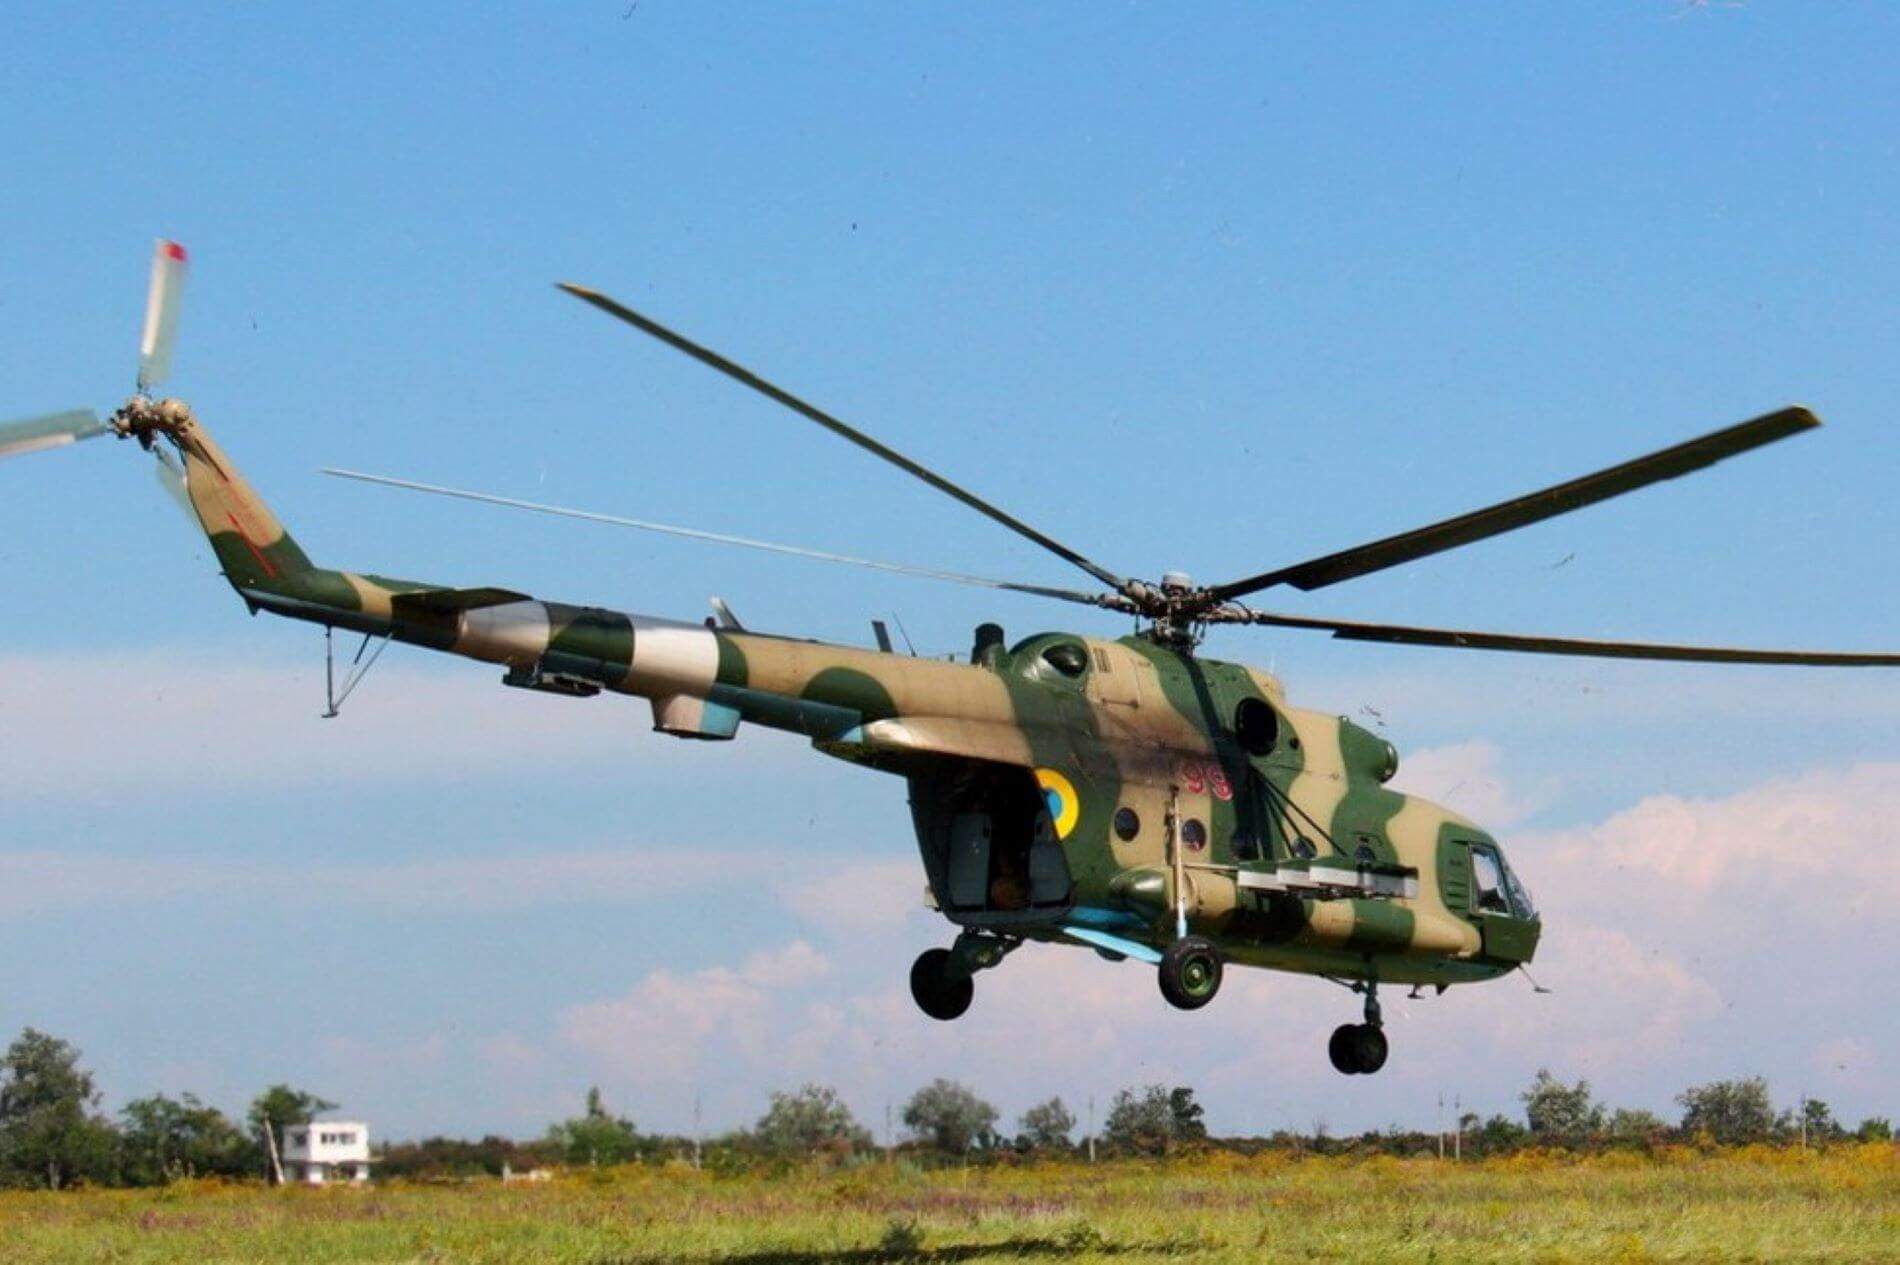 Ukrainische Luftwaffe greift mit vier Mi-8-Hubschraubern russische Stellungen an (Video)